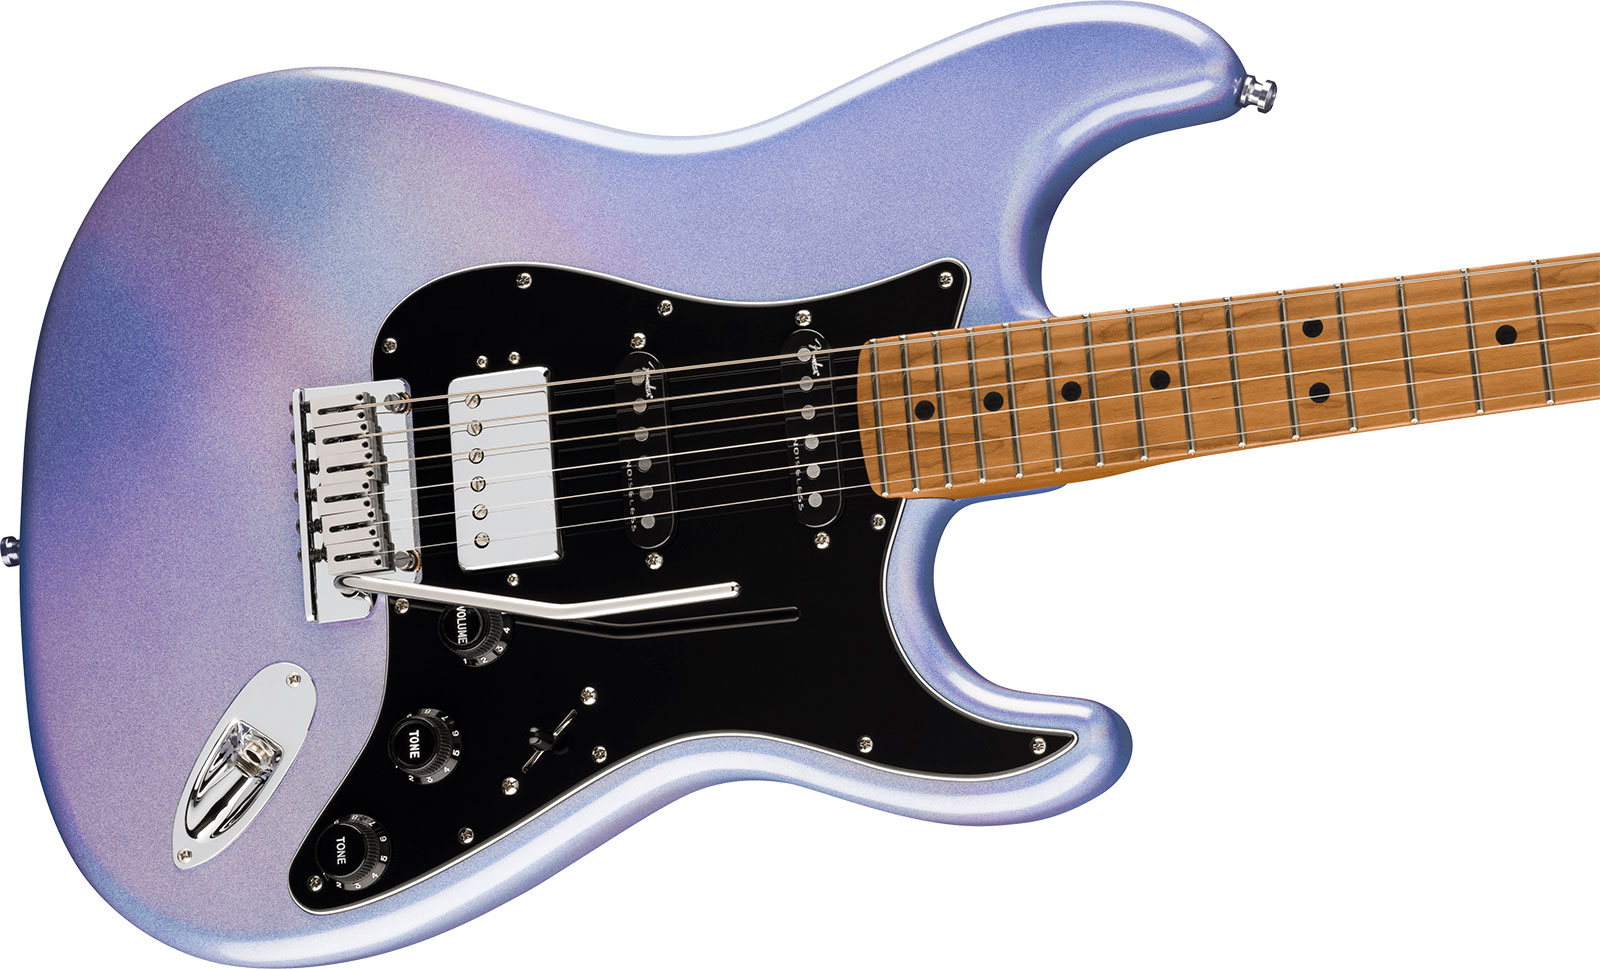 Fender Strat 70th Anniversary American Ultra Ltd Usa Hss Trem Mn - Amethyst - Guitarra eléctrica con forma de str. - Variation 2